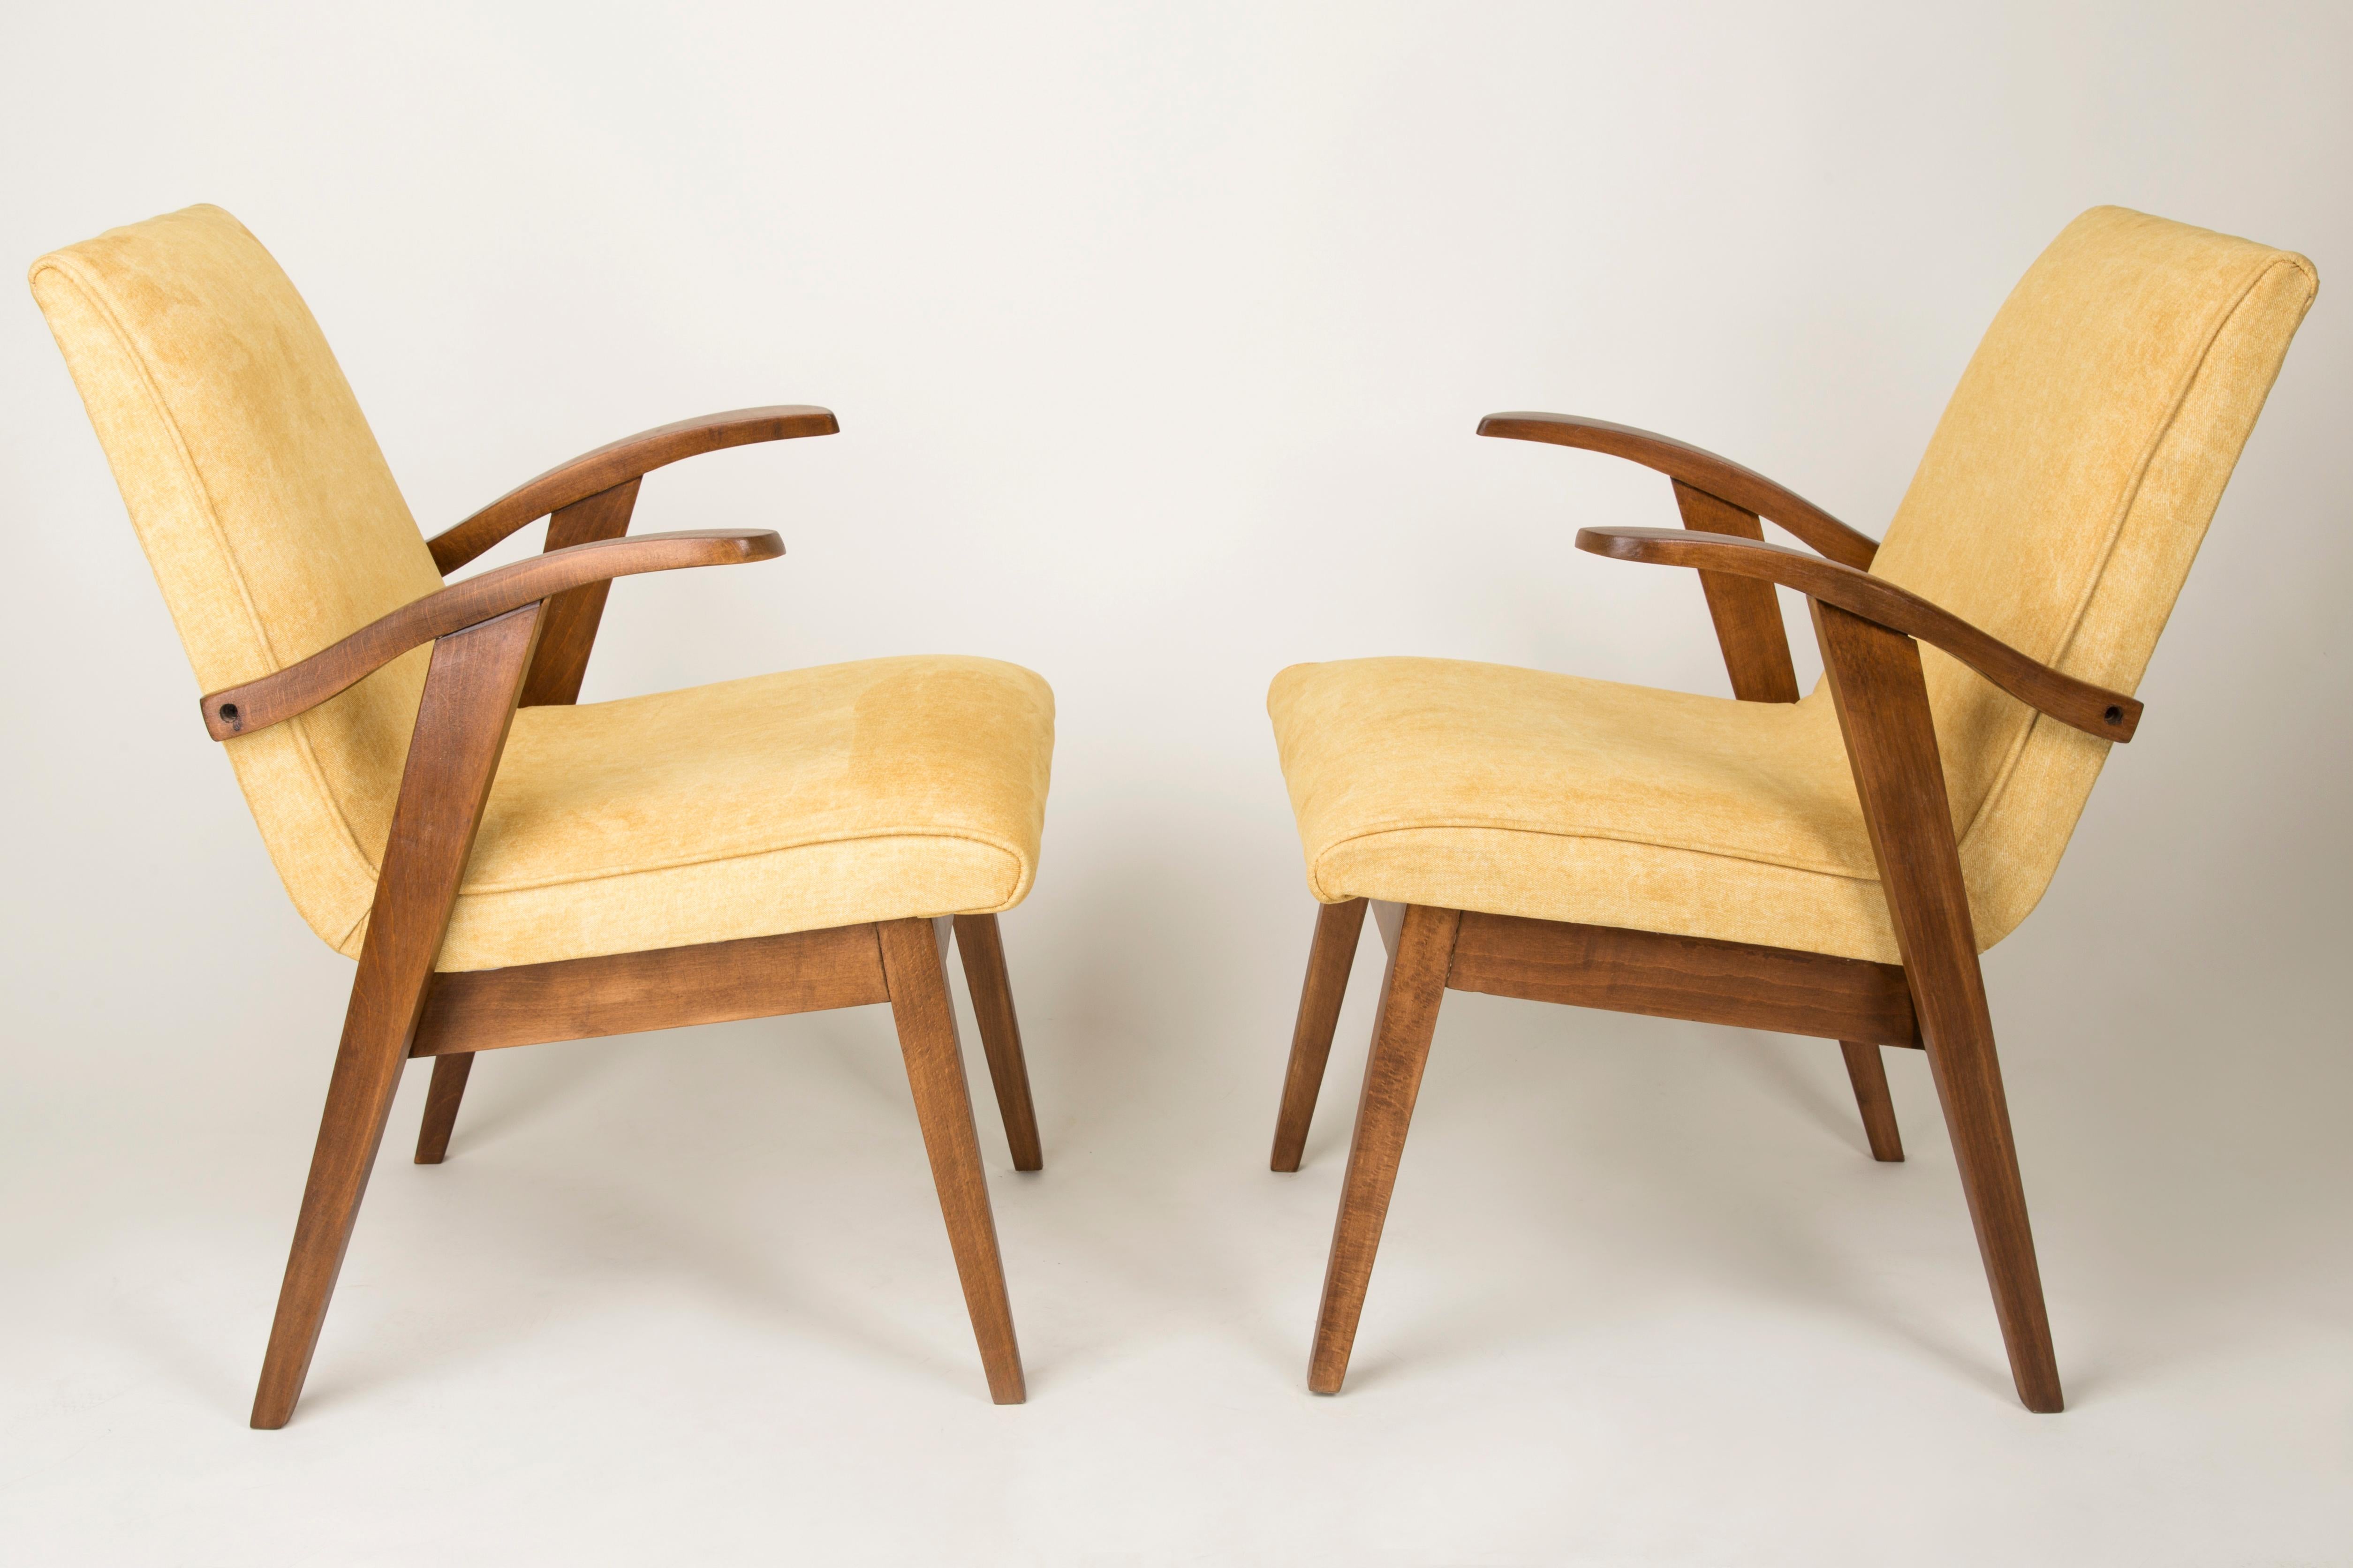 Von Mieczyslaw Puchala entworfener Sessel in einer Classic-Ausgabe. Dunkles Holz kombiniert mit einem gelben Stoff verleiht ihm Eleganz und Noblesse. Der Stuhl wurde einer kompletten Tischler- und Polstermöbelrenovierung unterzogen. Das Holz ist in